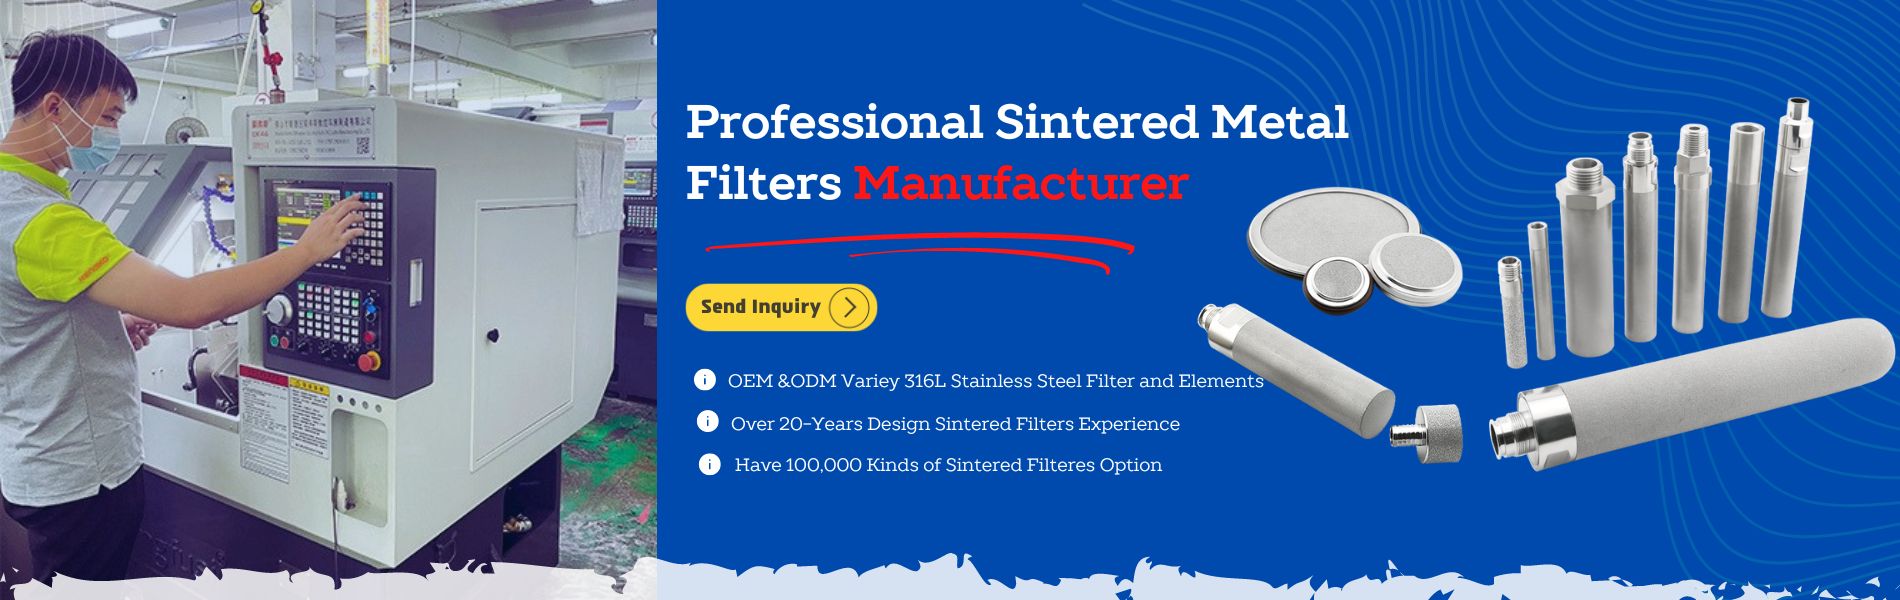 Produttore prufessiunale di filtri metalli sinterizzati